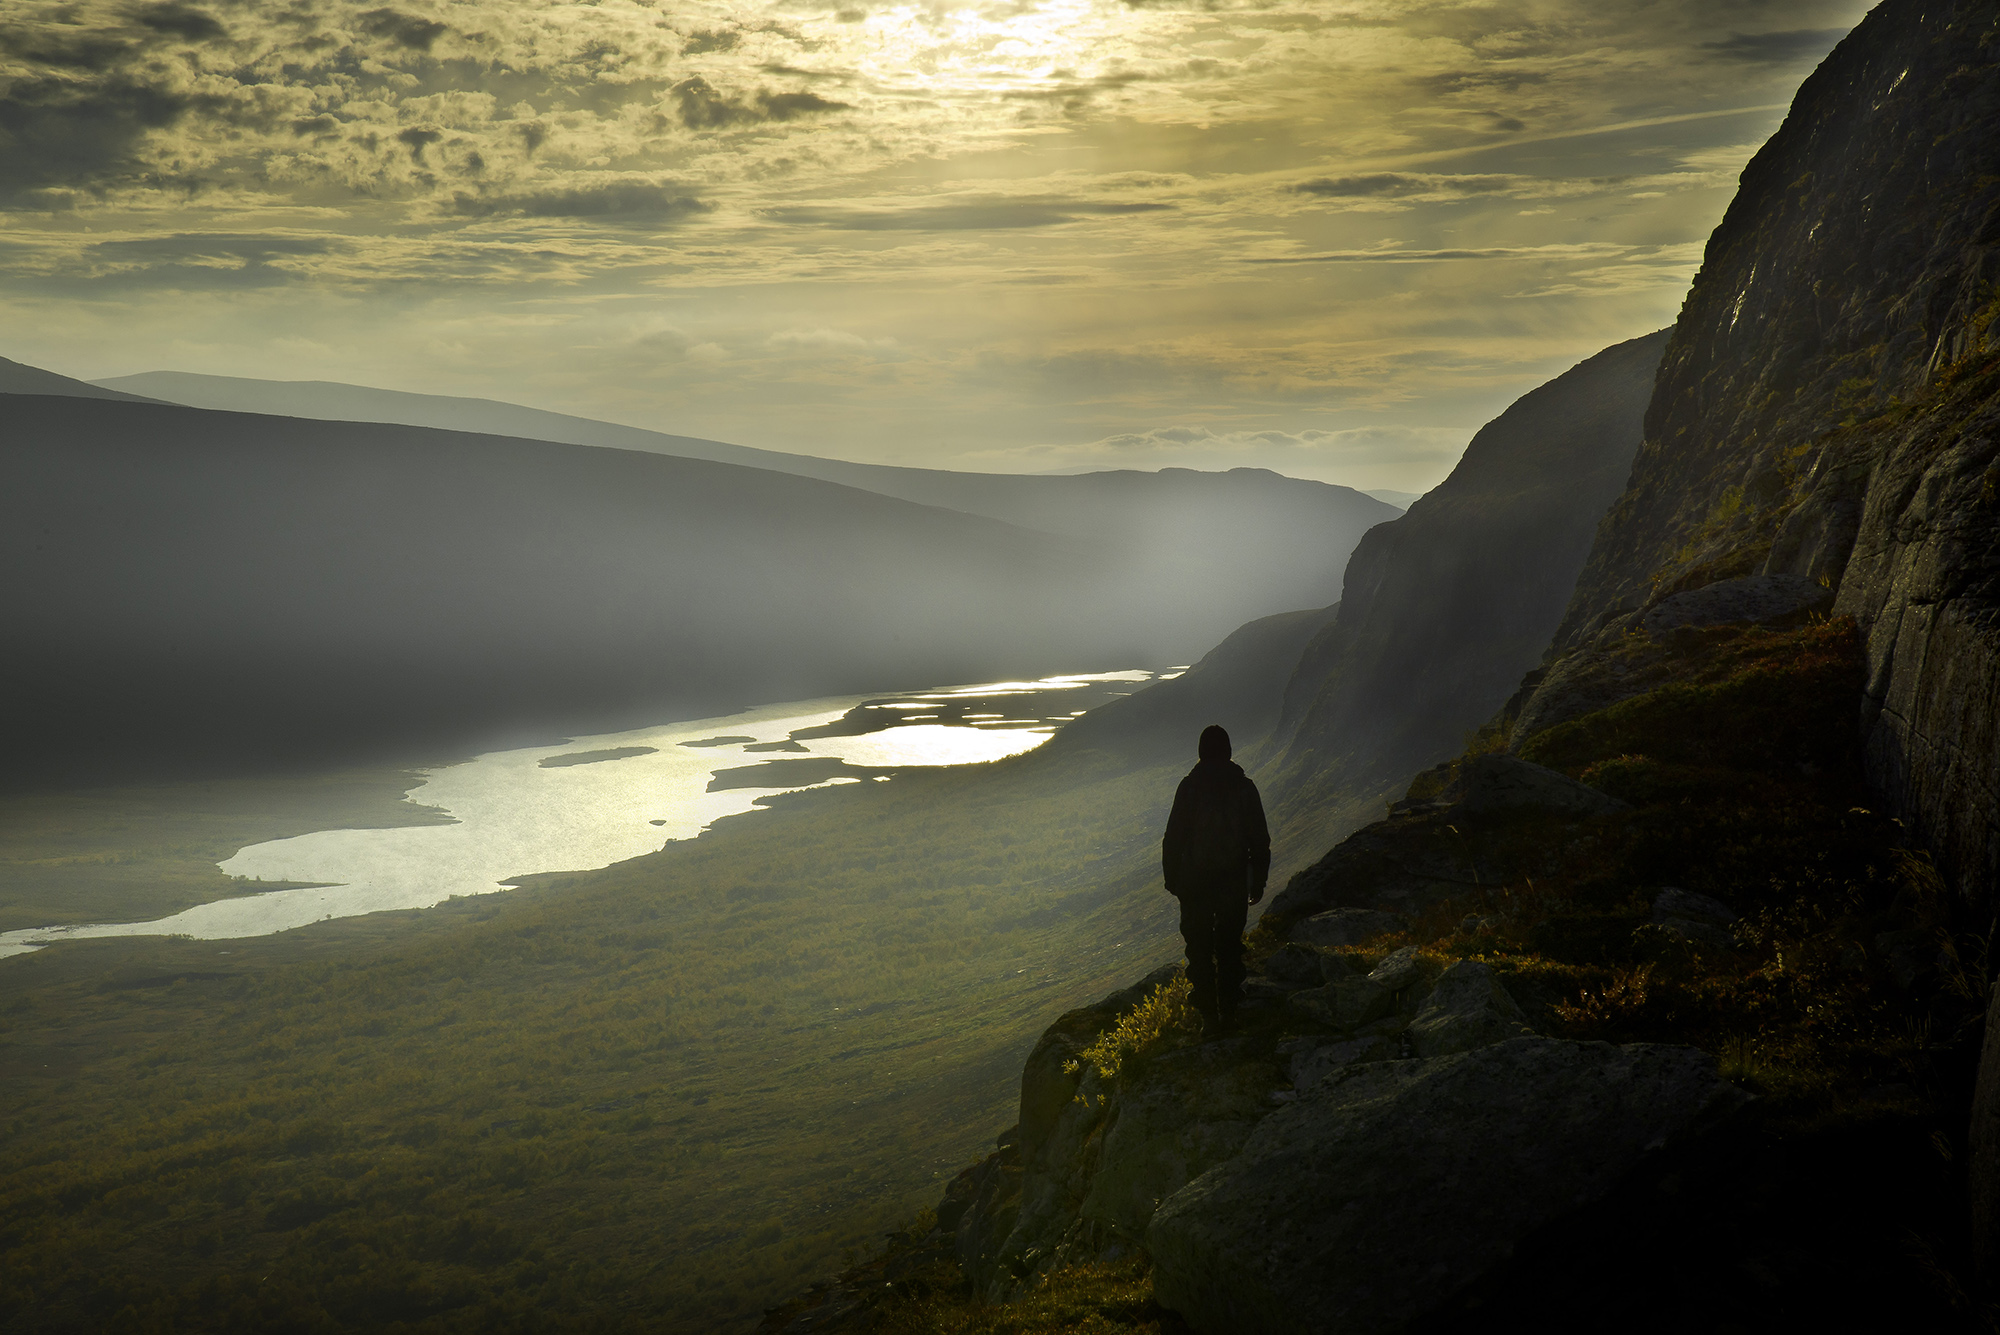 En man står på ett berg och blickar ut över en dal med en sjö.